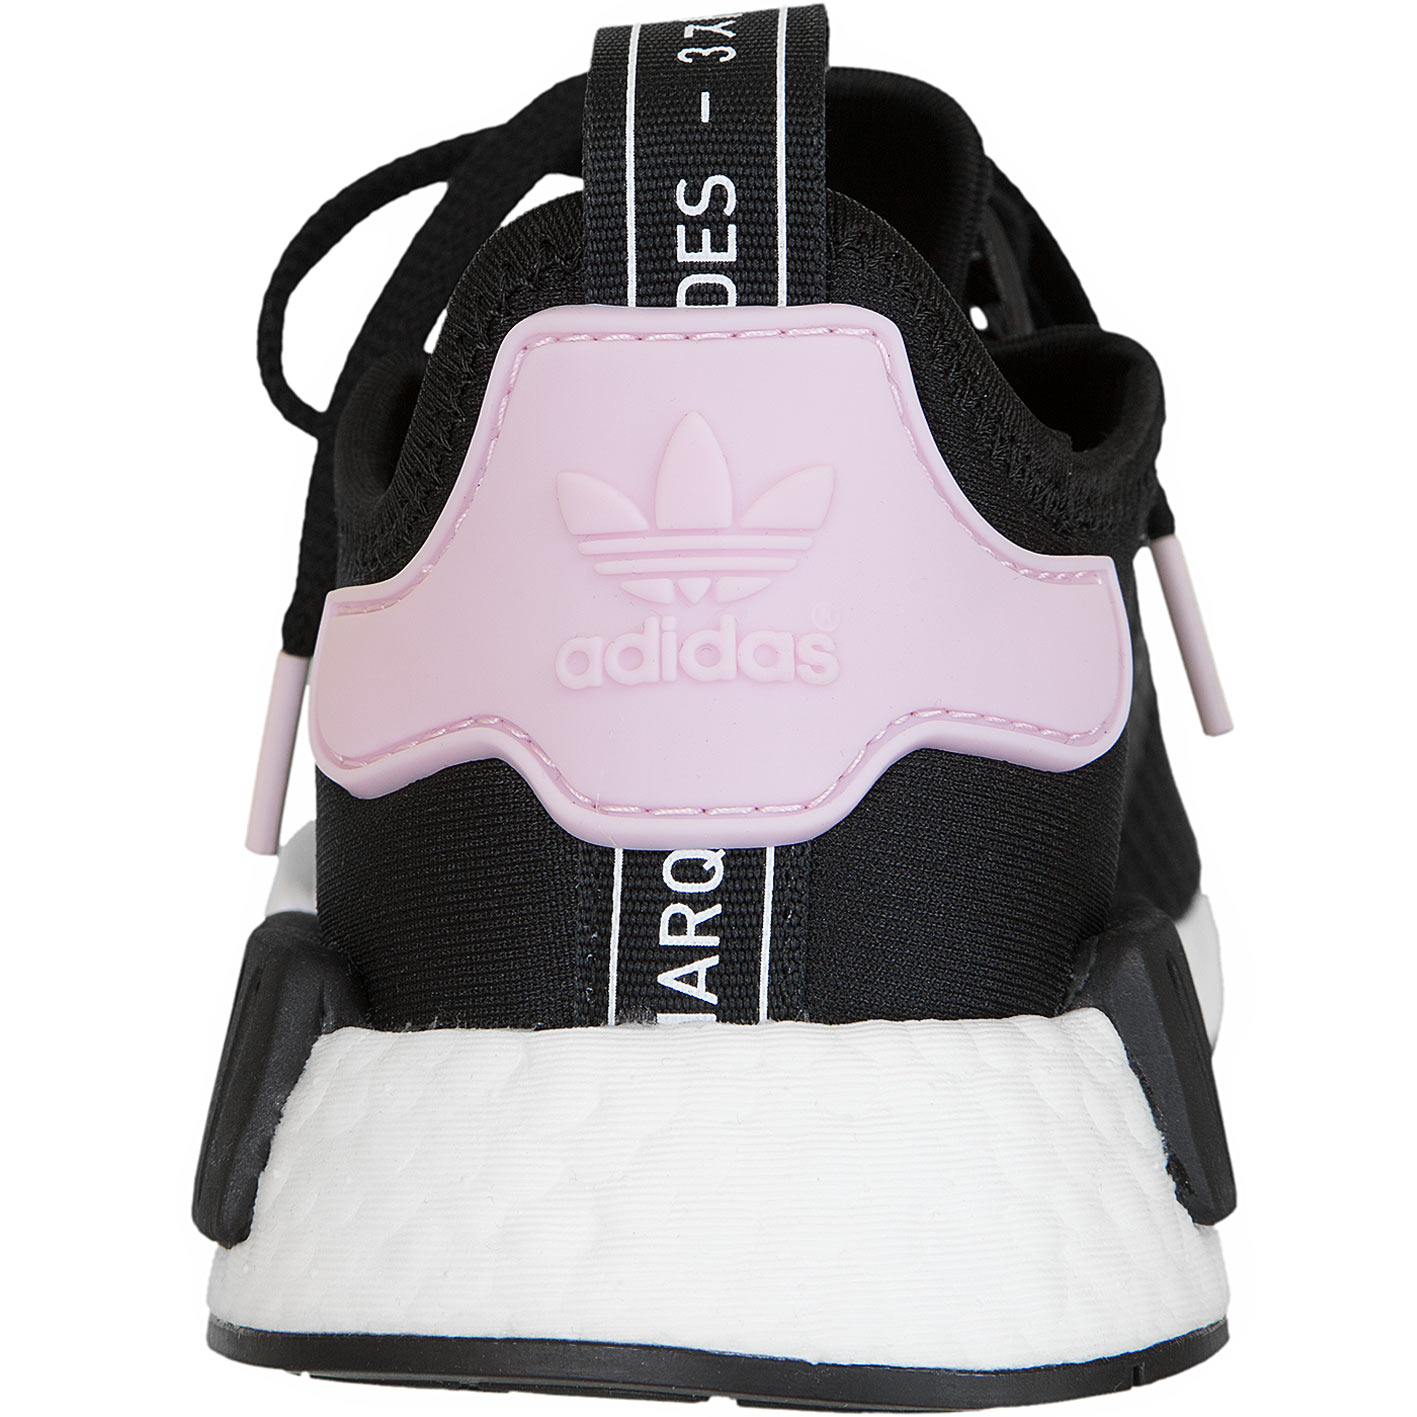 ☆ Adidas Originals Damen Sneaker NMD R1 schwarz/weiß/pink - hier bestellen!